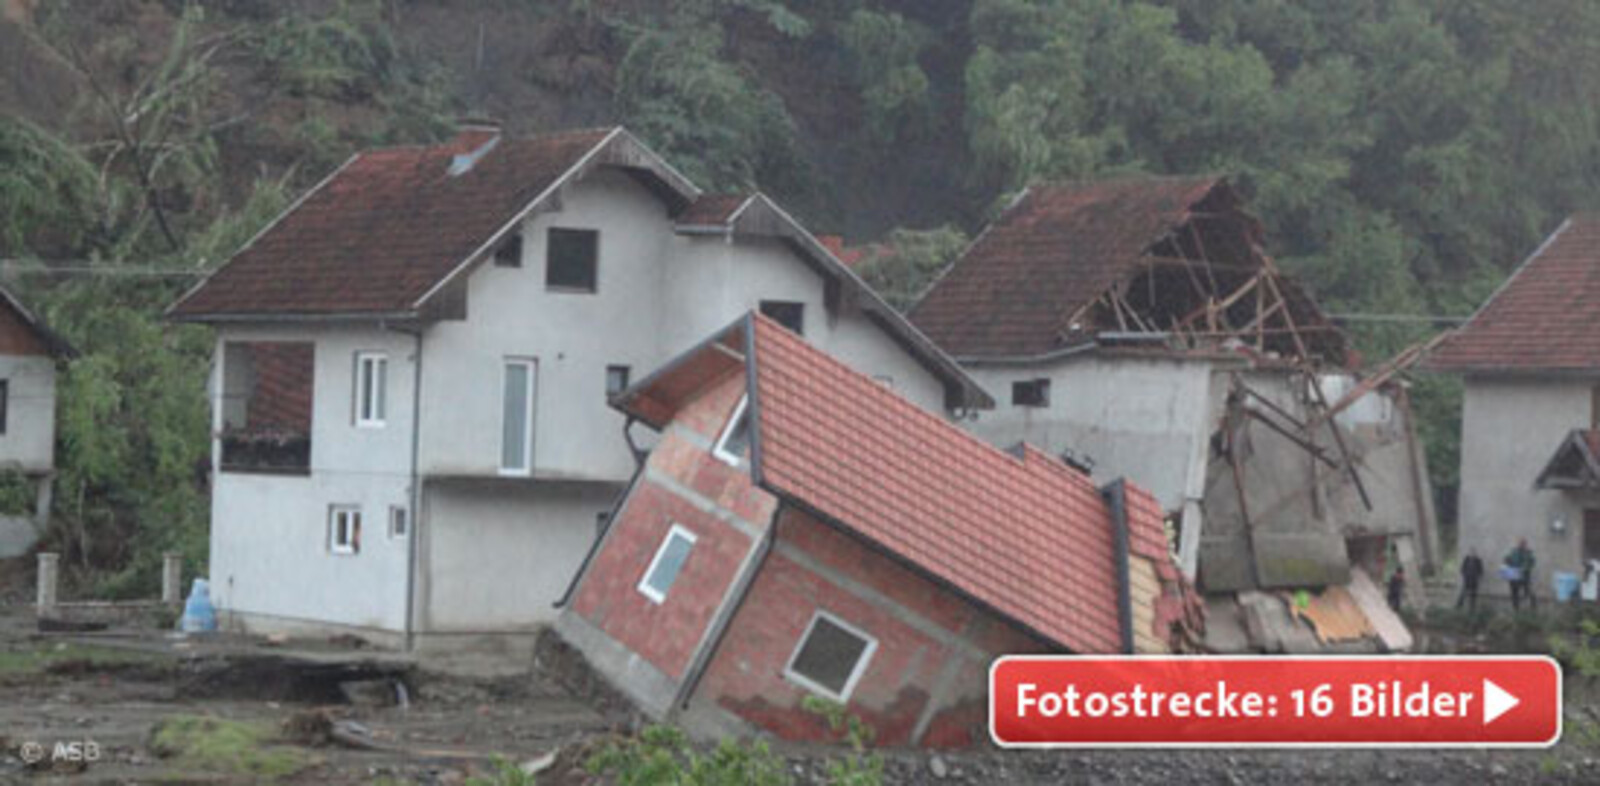 Die schwersten Regenfälle seit 120 Jahren haben in weiten Teilen von Bosnien und Herzegowina sowie Serbien zu dramatischen Überschwemmungen geführt.